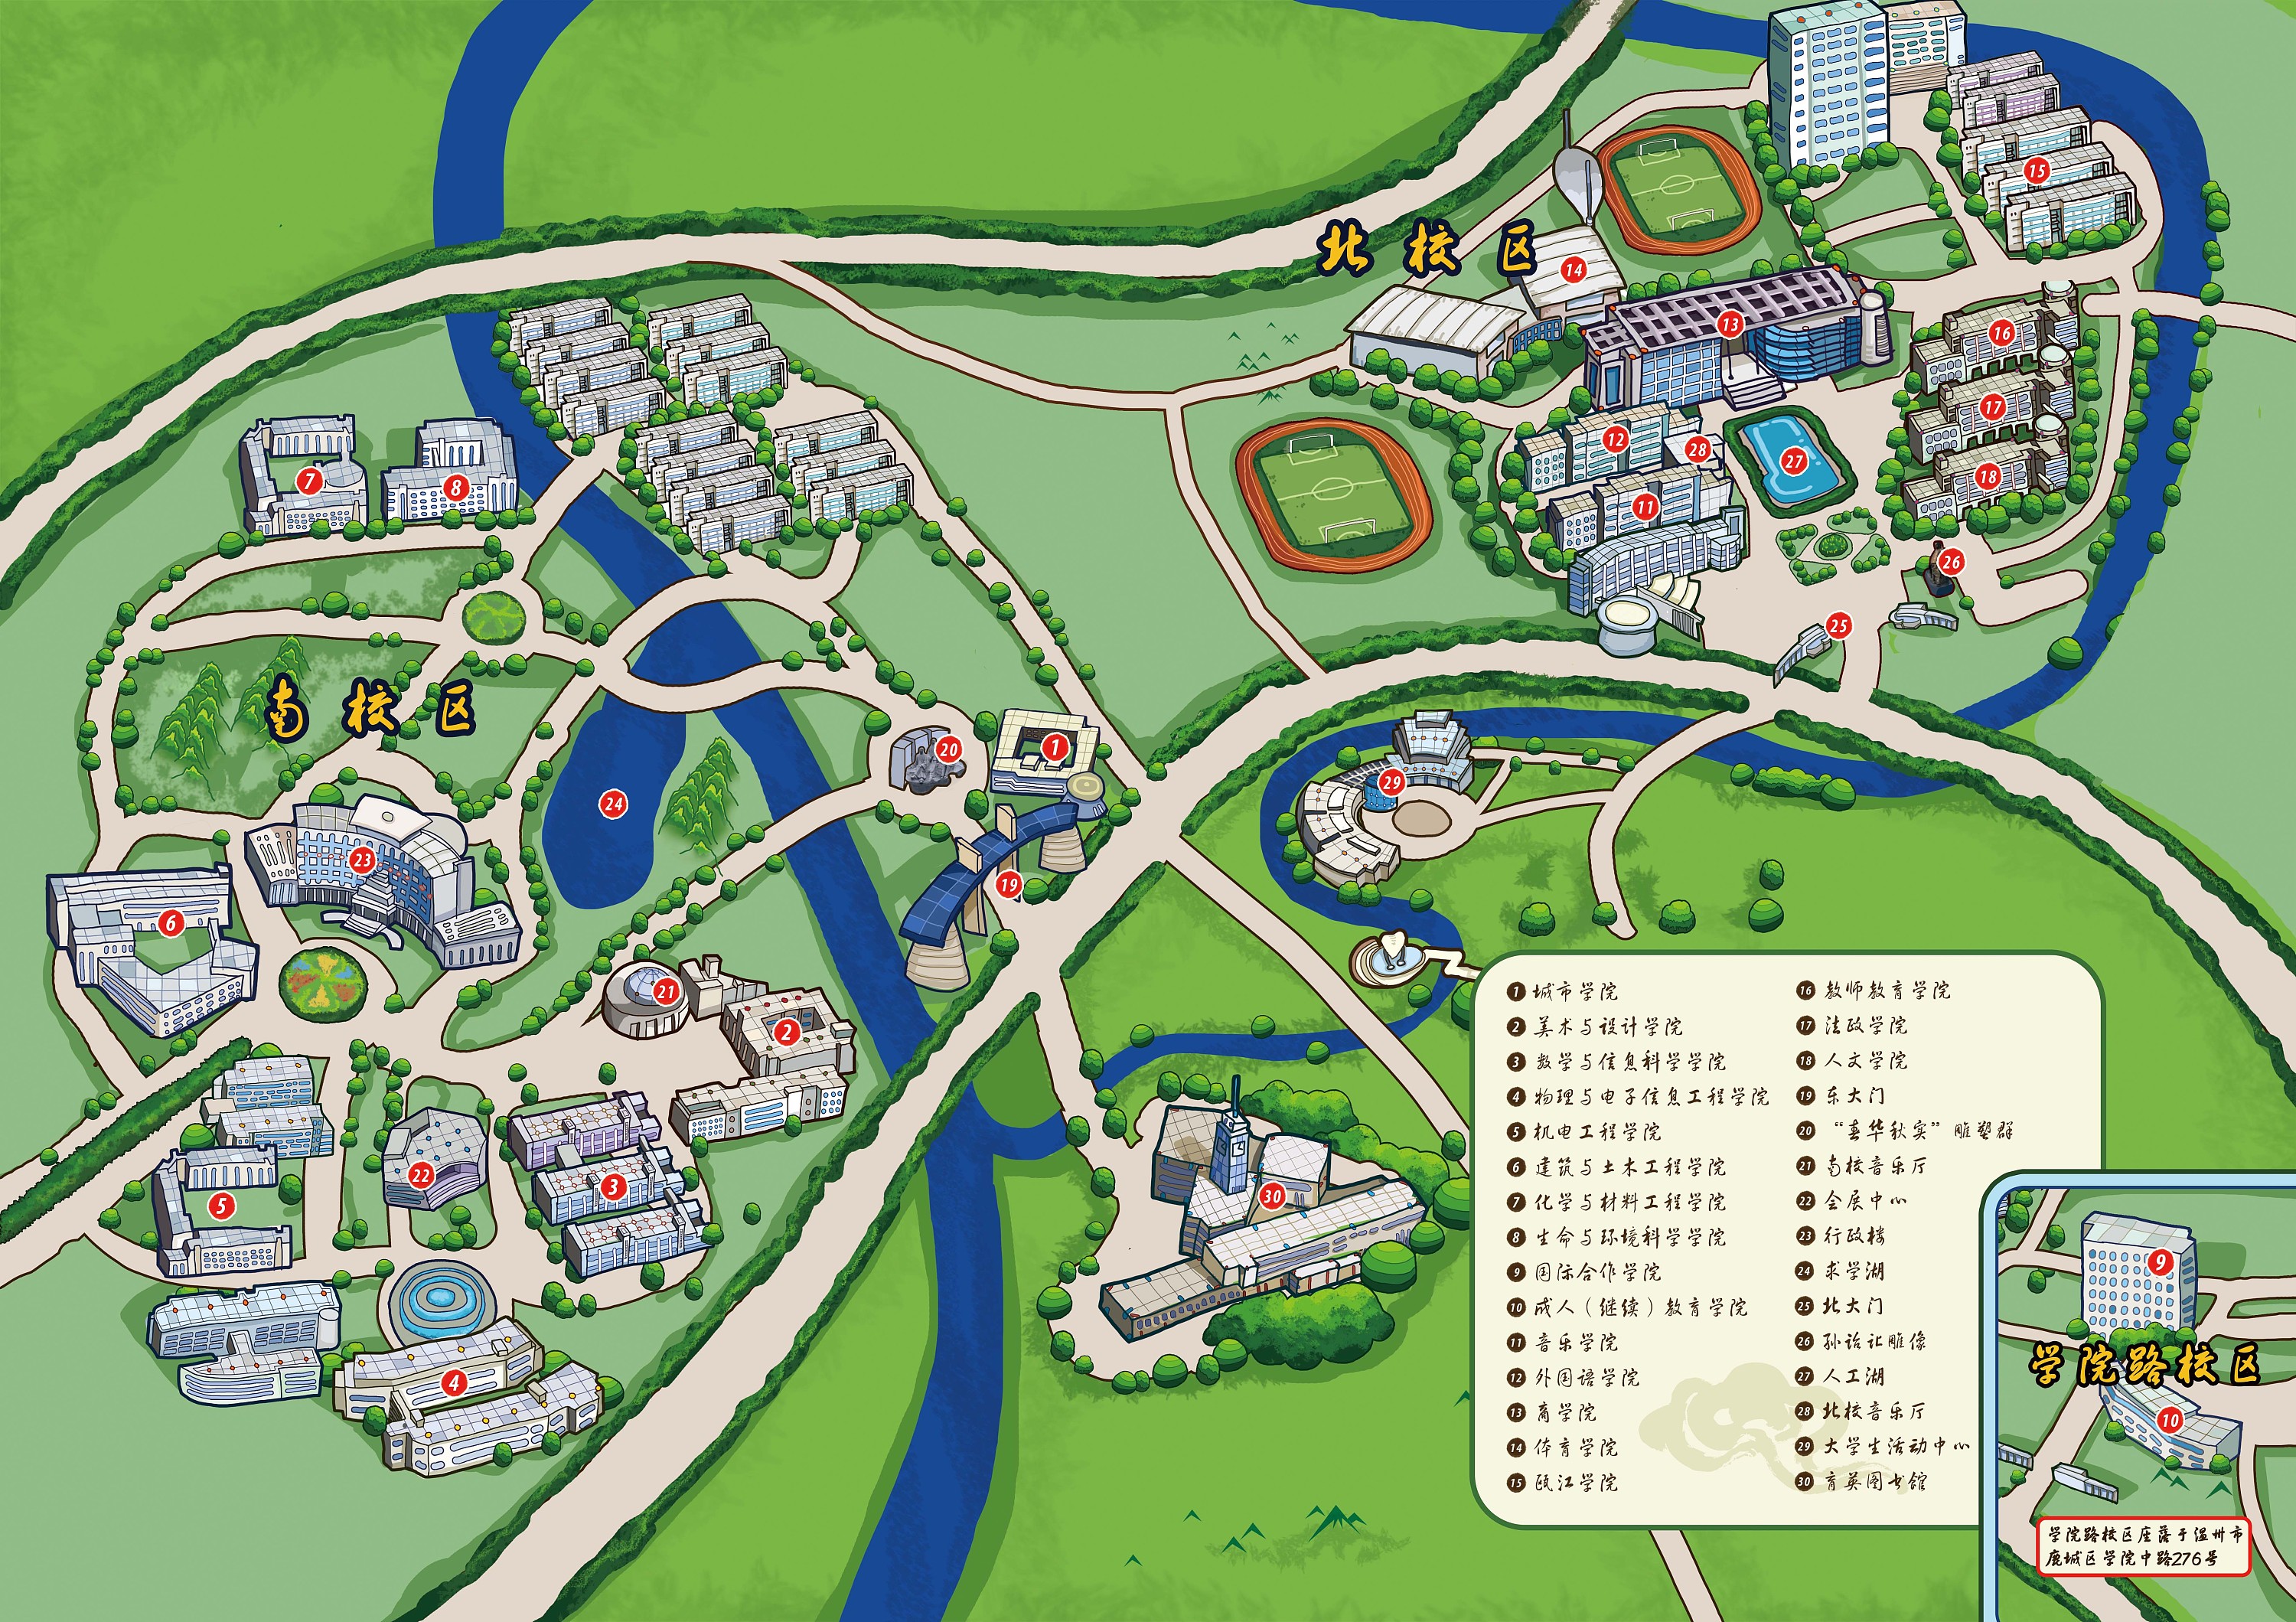 温州大学校园文化手绘地图(朝颜视觉)